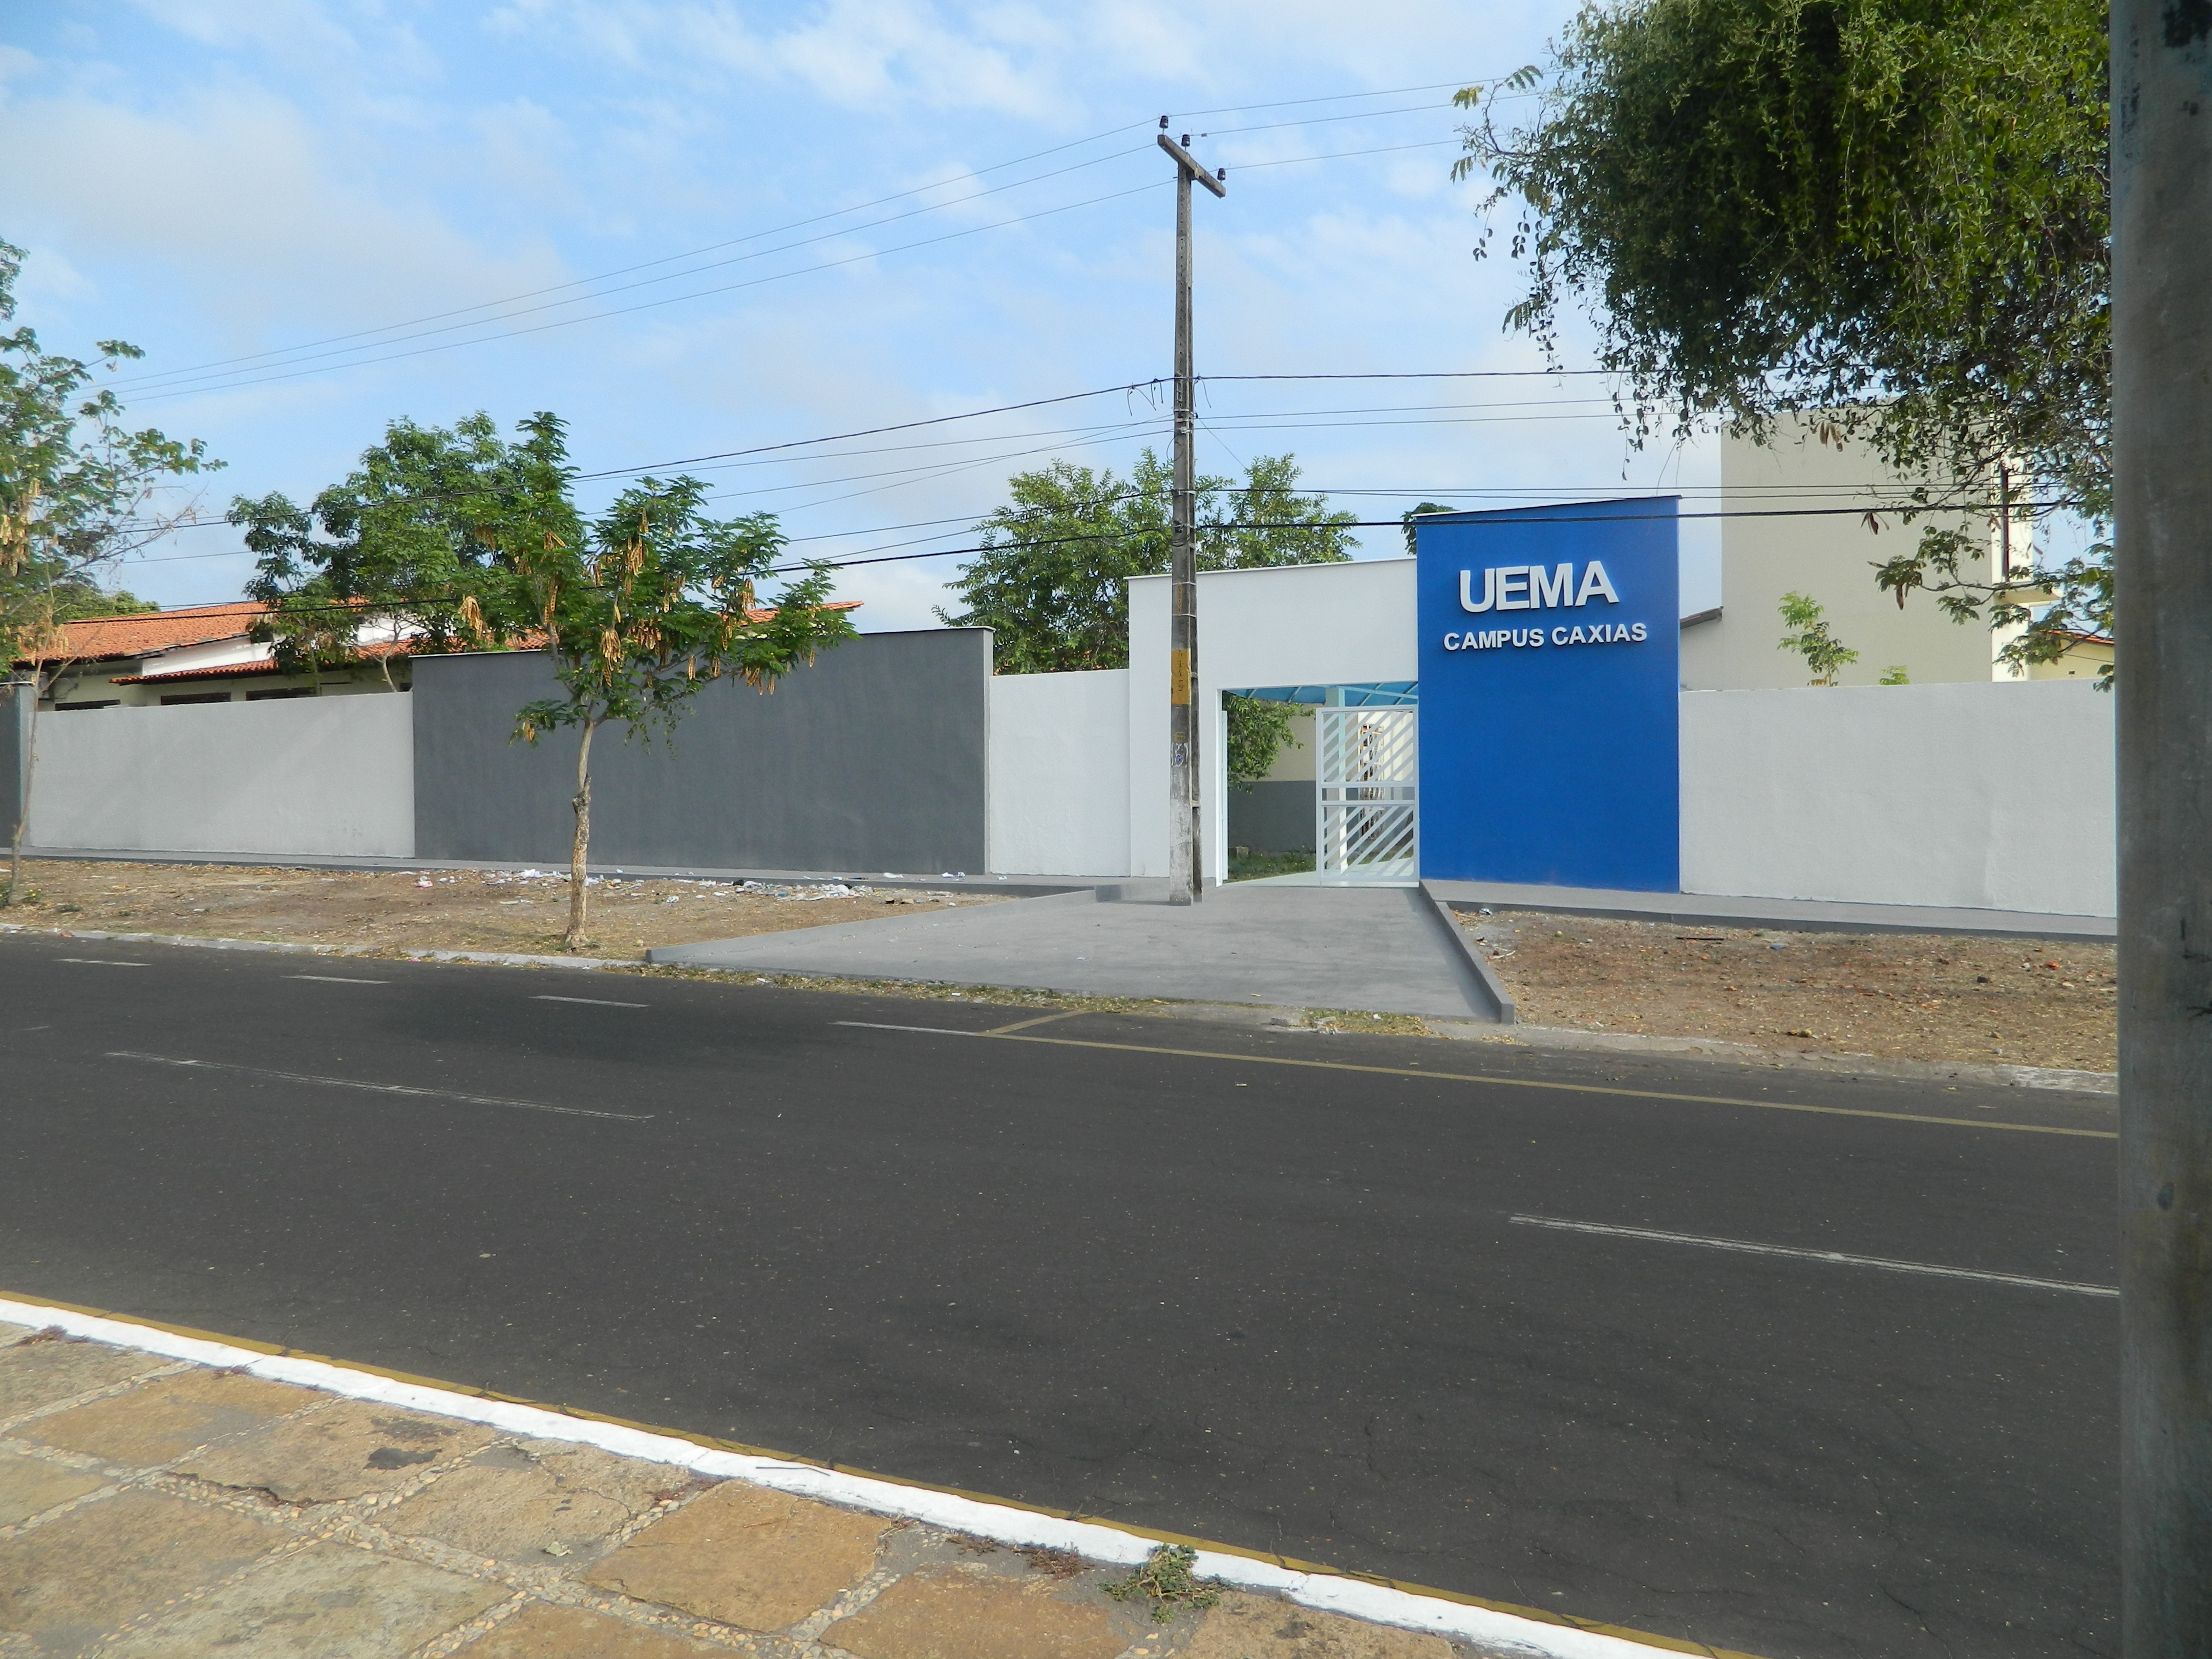 UEMA  V Letras Conversa é realizado no Campus Caxias